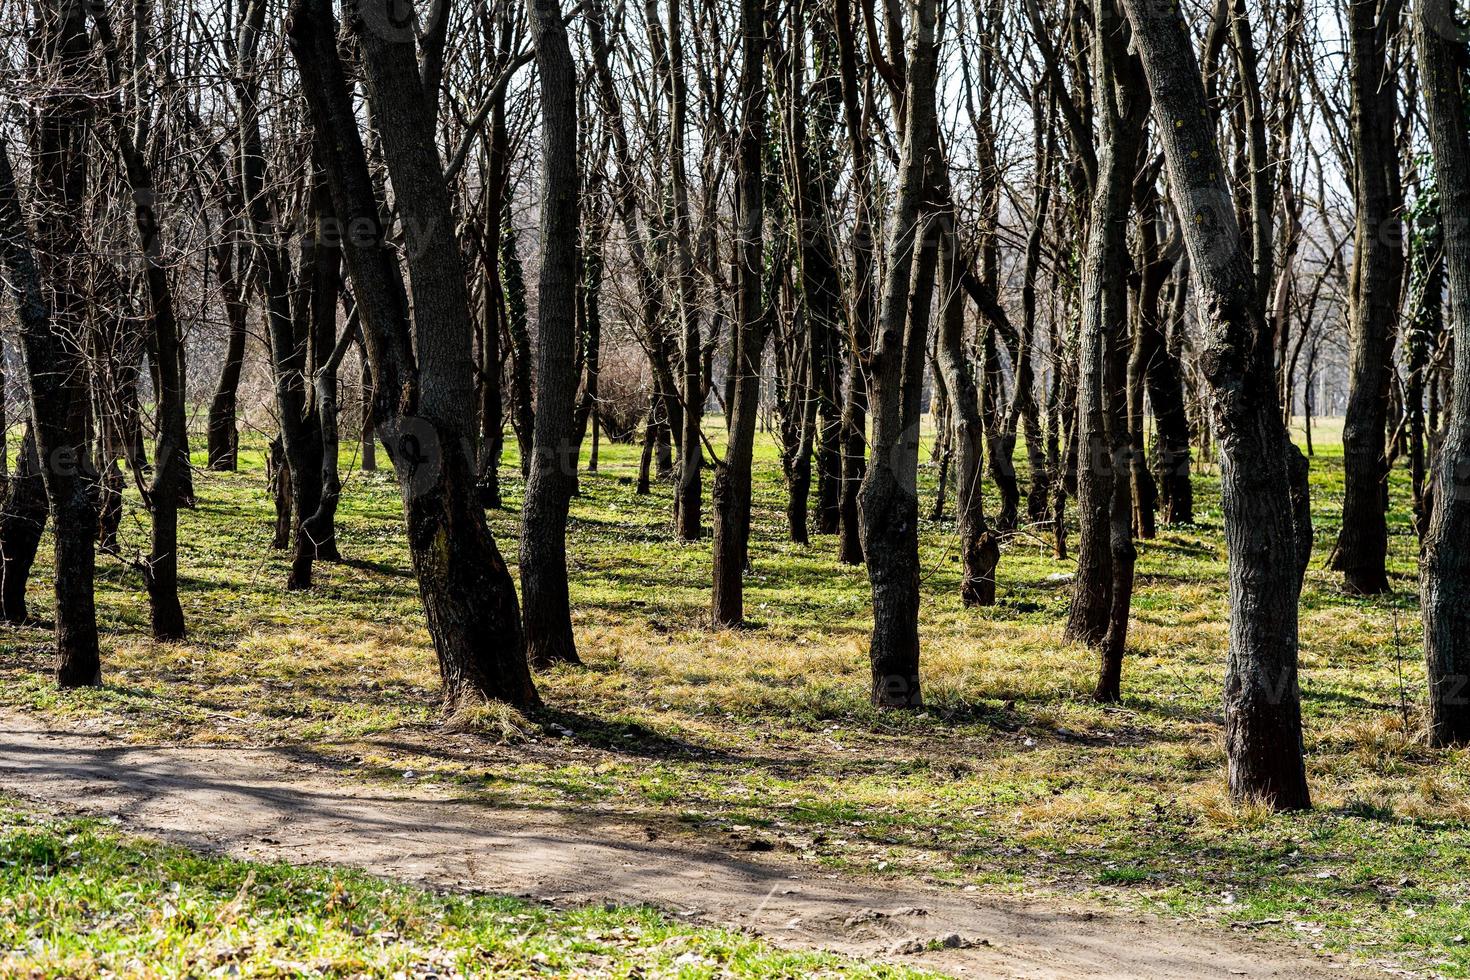 troncs d'arbres dans une forêt dense, chemin à travers des rangées d'arbres. photo